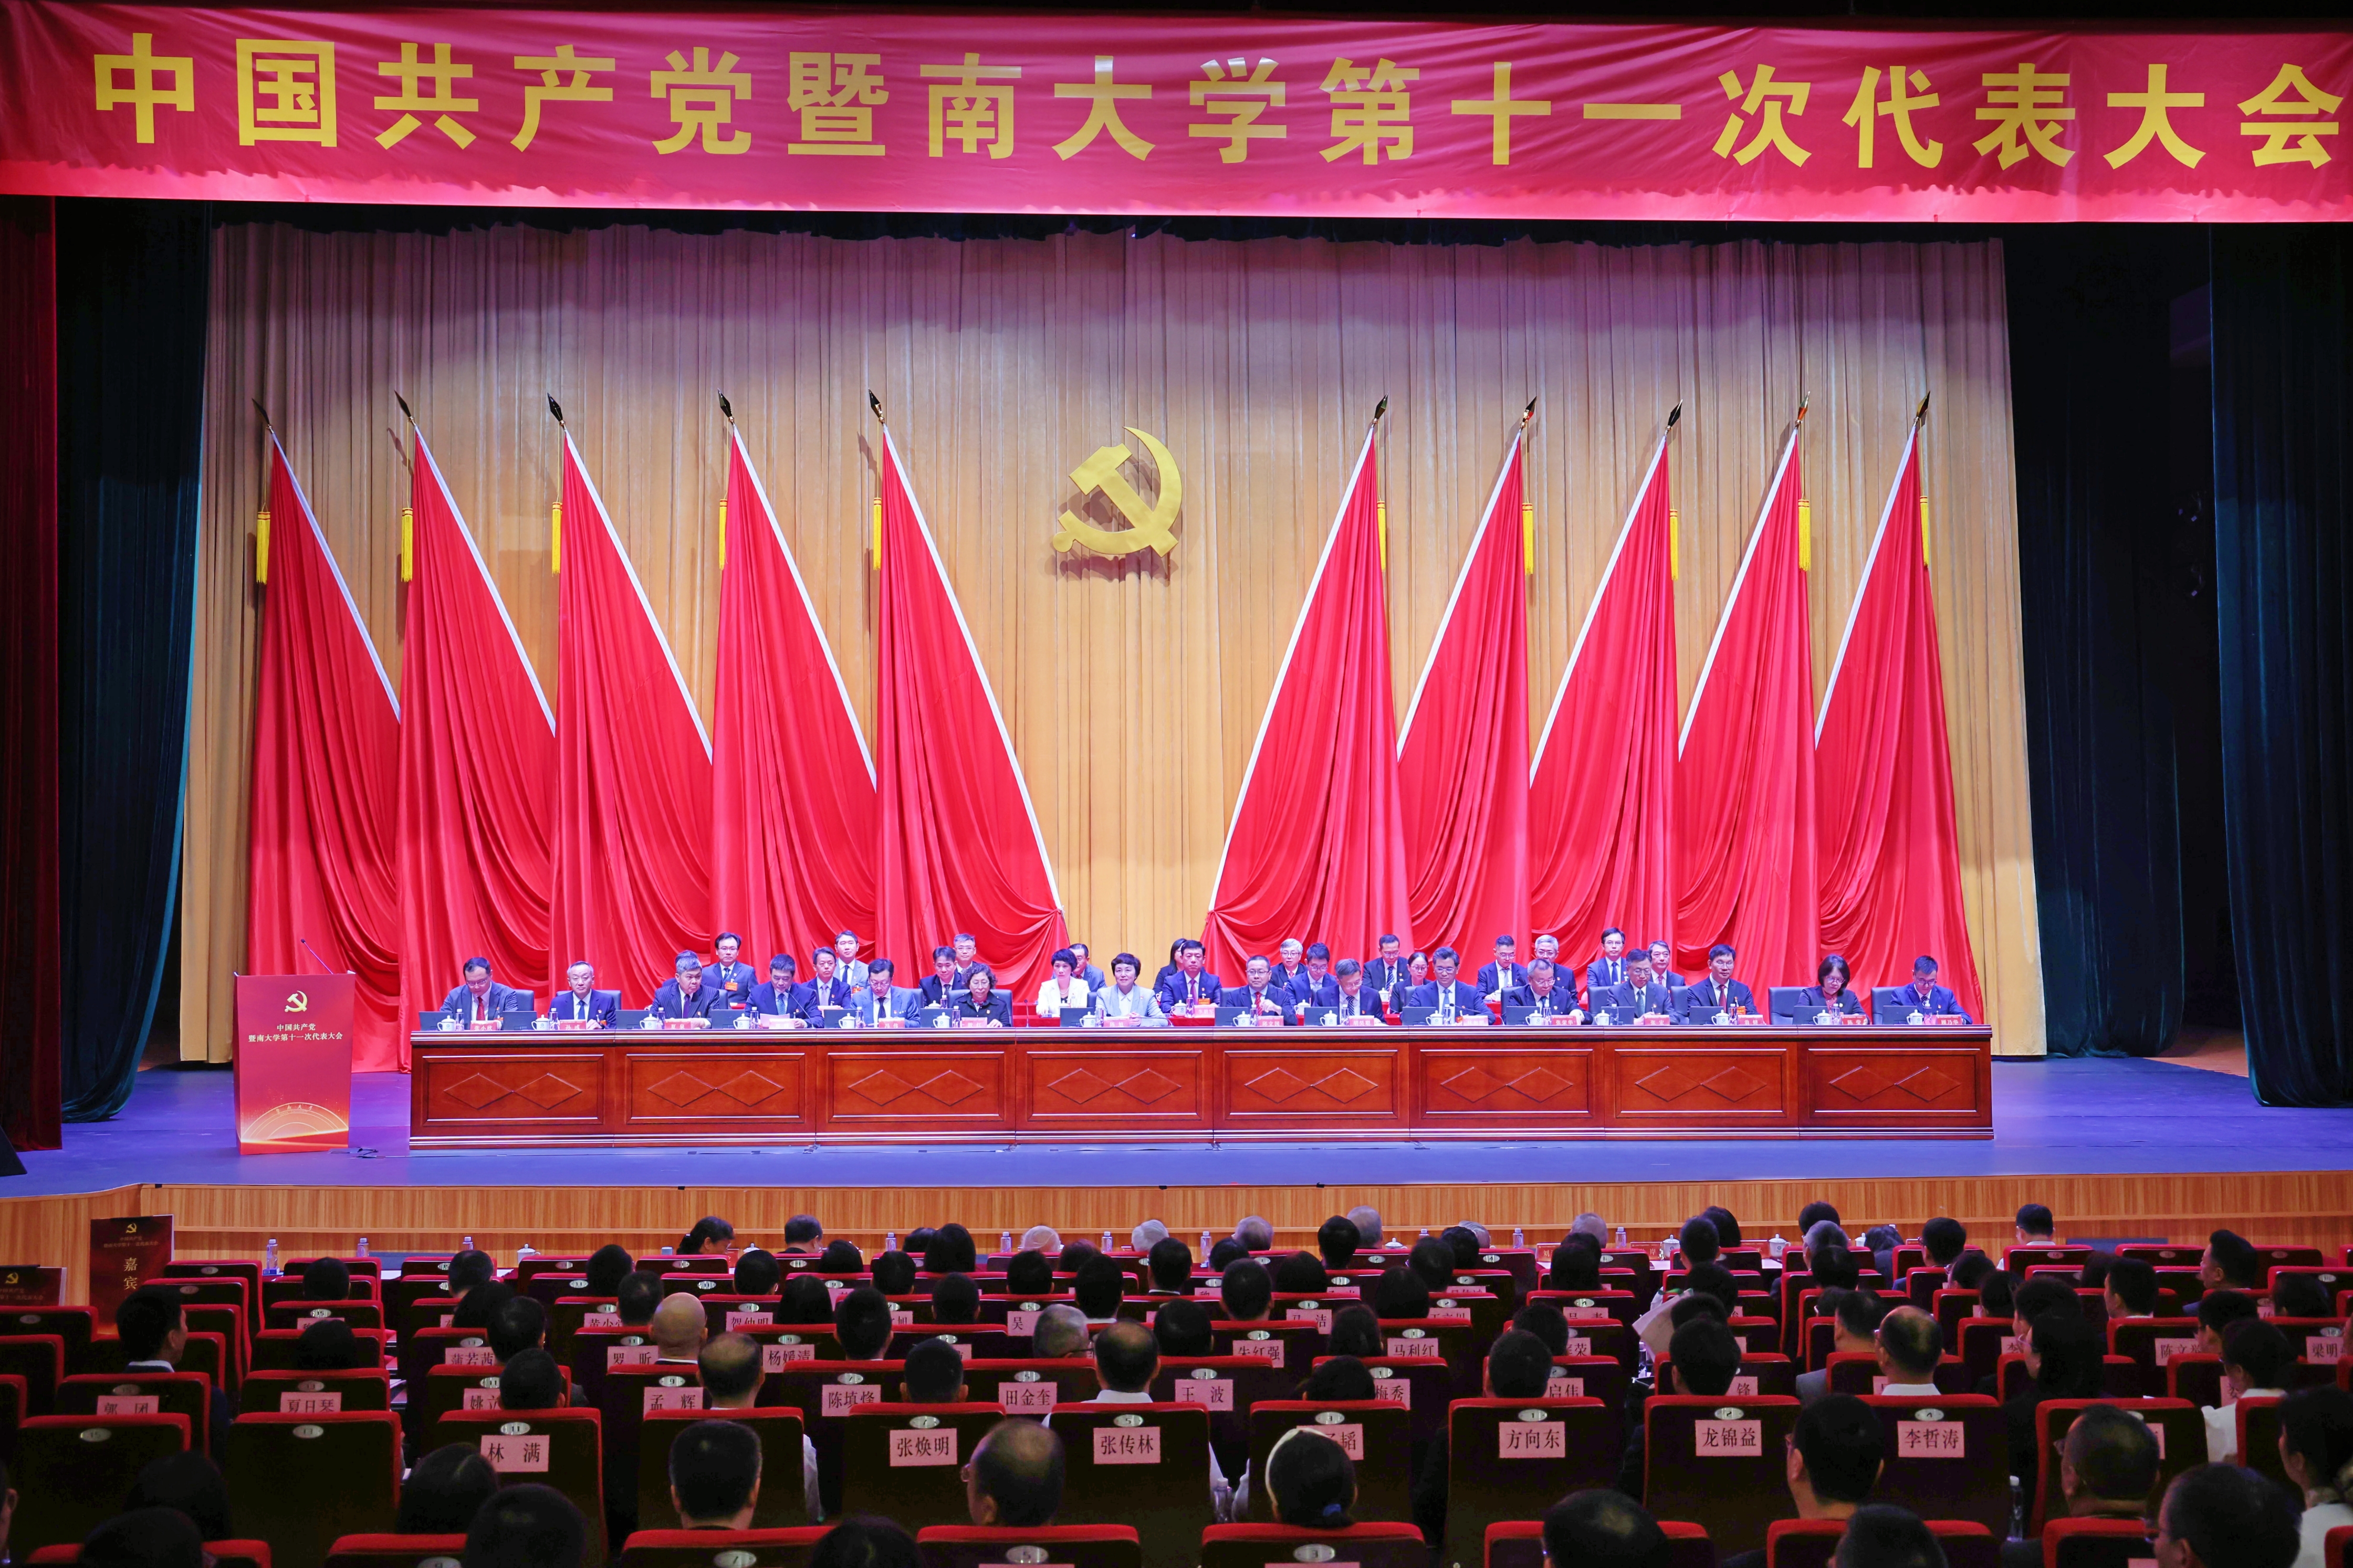 中国共产党暨南大学第十一代表大会开幕 以“双一流”建设为核心提出未来五年工作“十大任务”